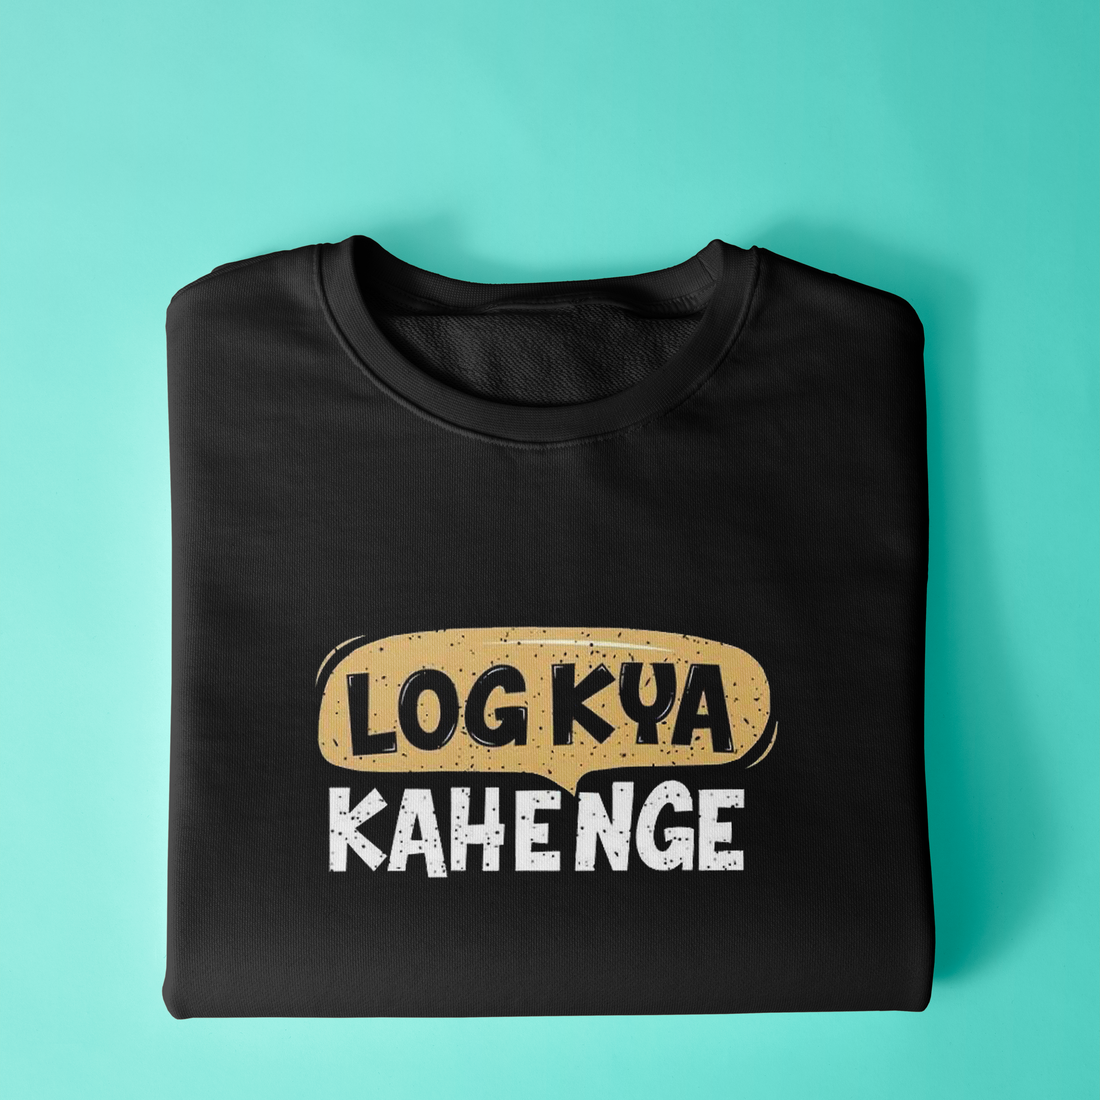 Log Kya Kahenge Sweatshirt